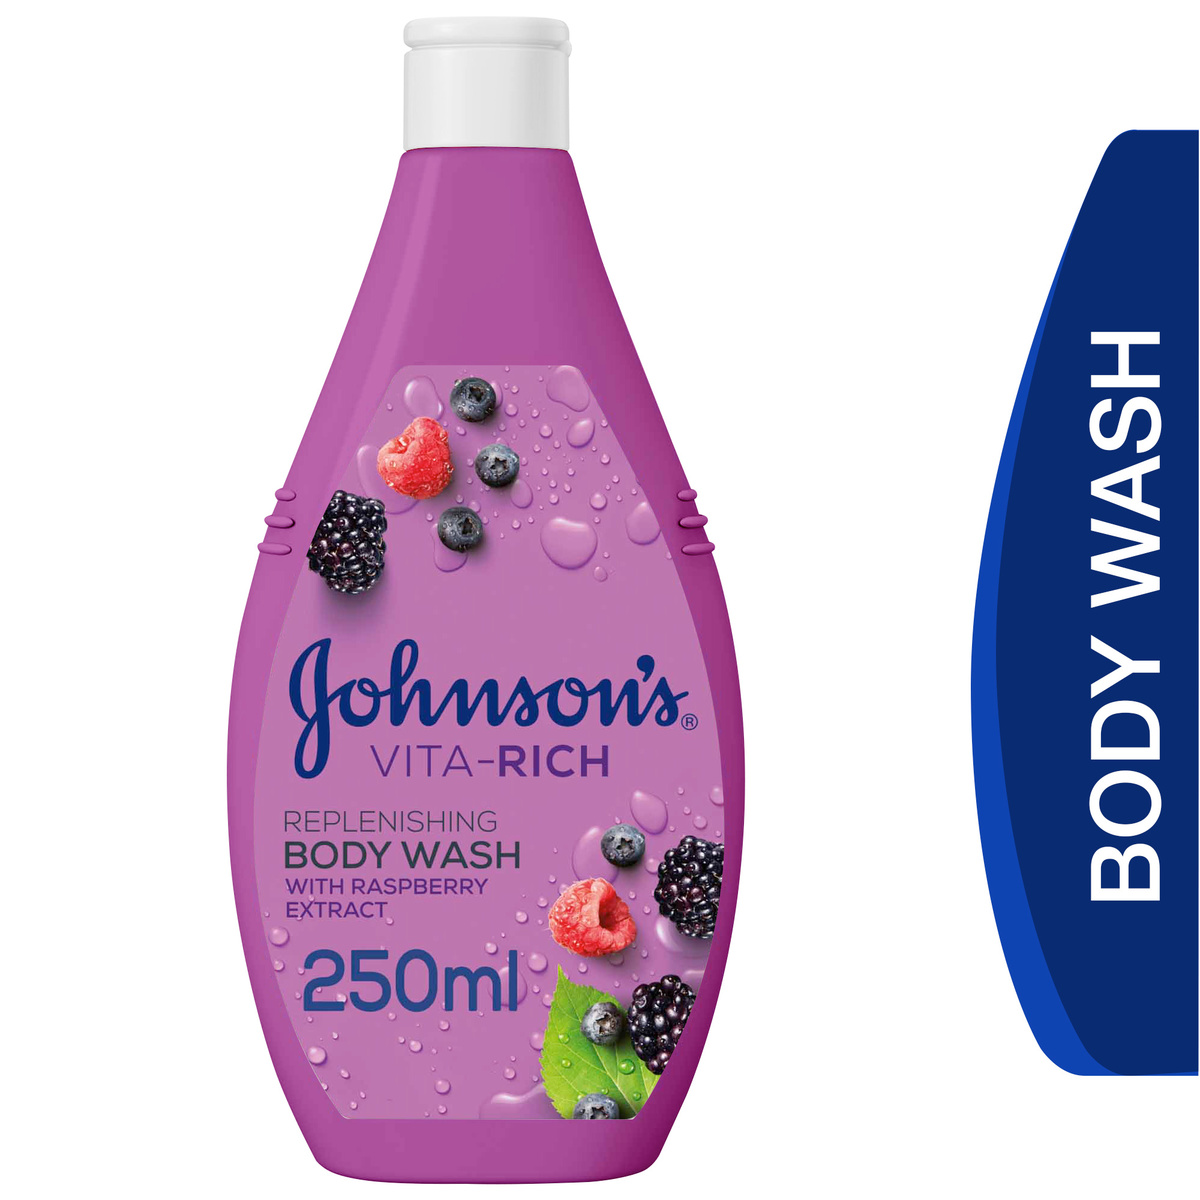 اشتري قم بشراء جونسون غسول الجسم فيتا ريتش نضارة 250 مل Online at Best Price من الموقع - من لولو هايبر ماركت Shower Gel&Body Wash في السعودية